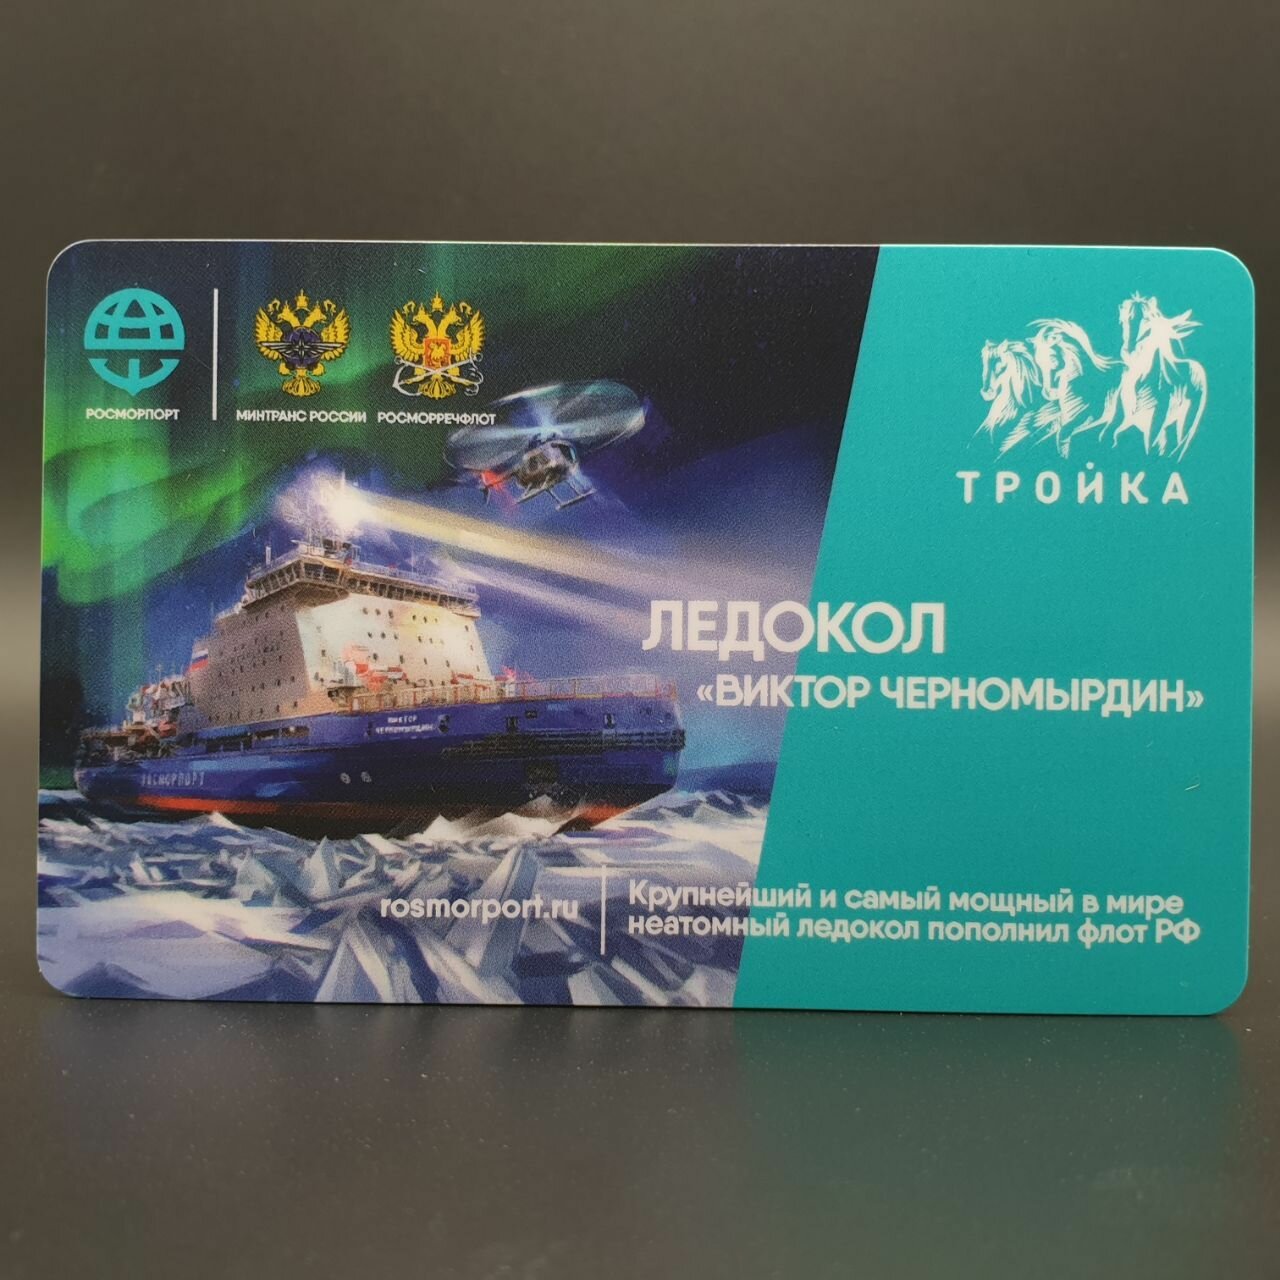 Транспортная карта метро Тройка - Ледокол Виктор Черномырдин 2020